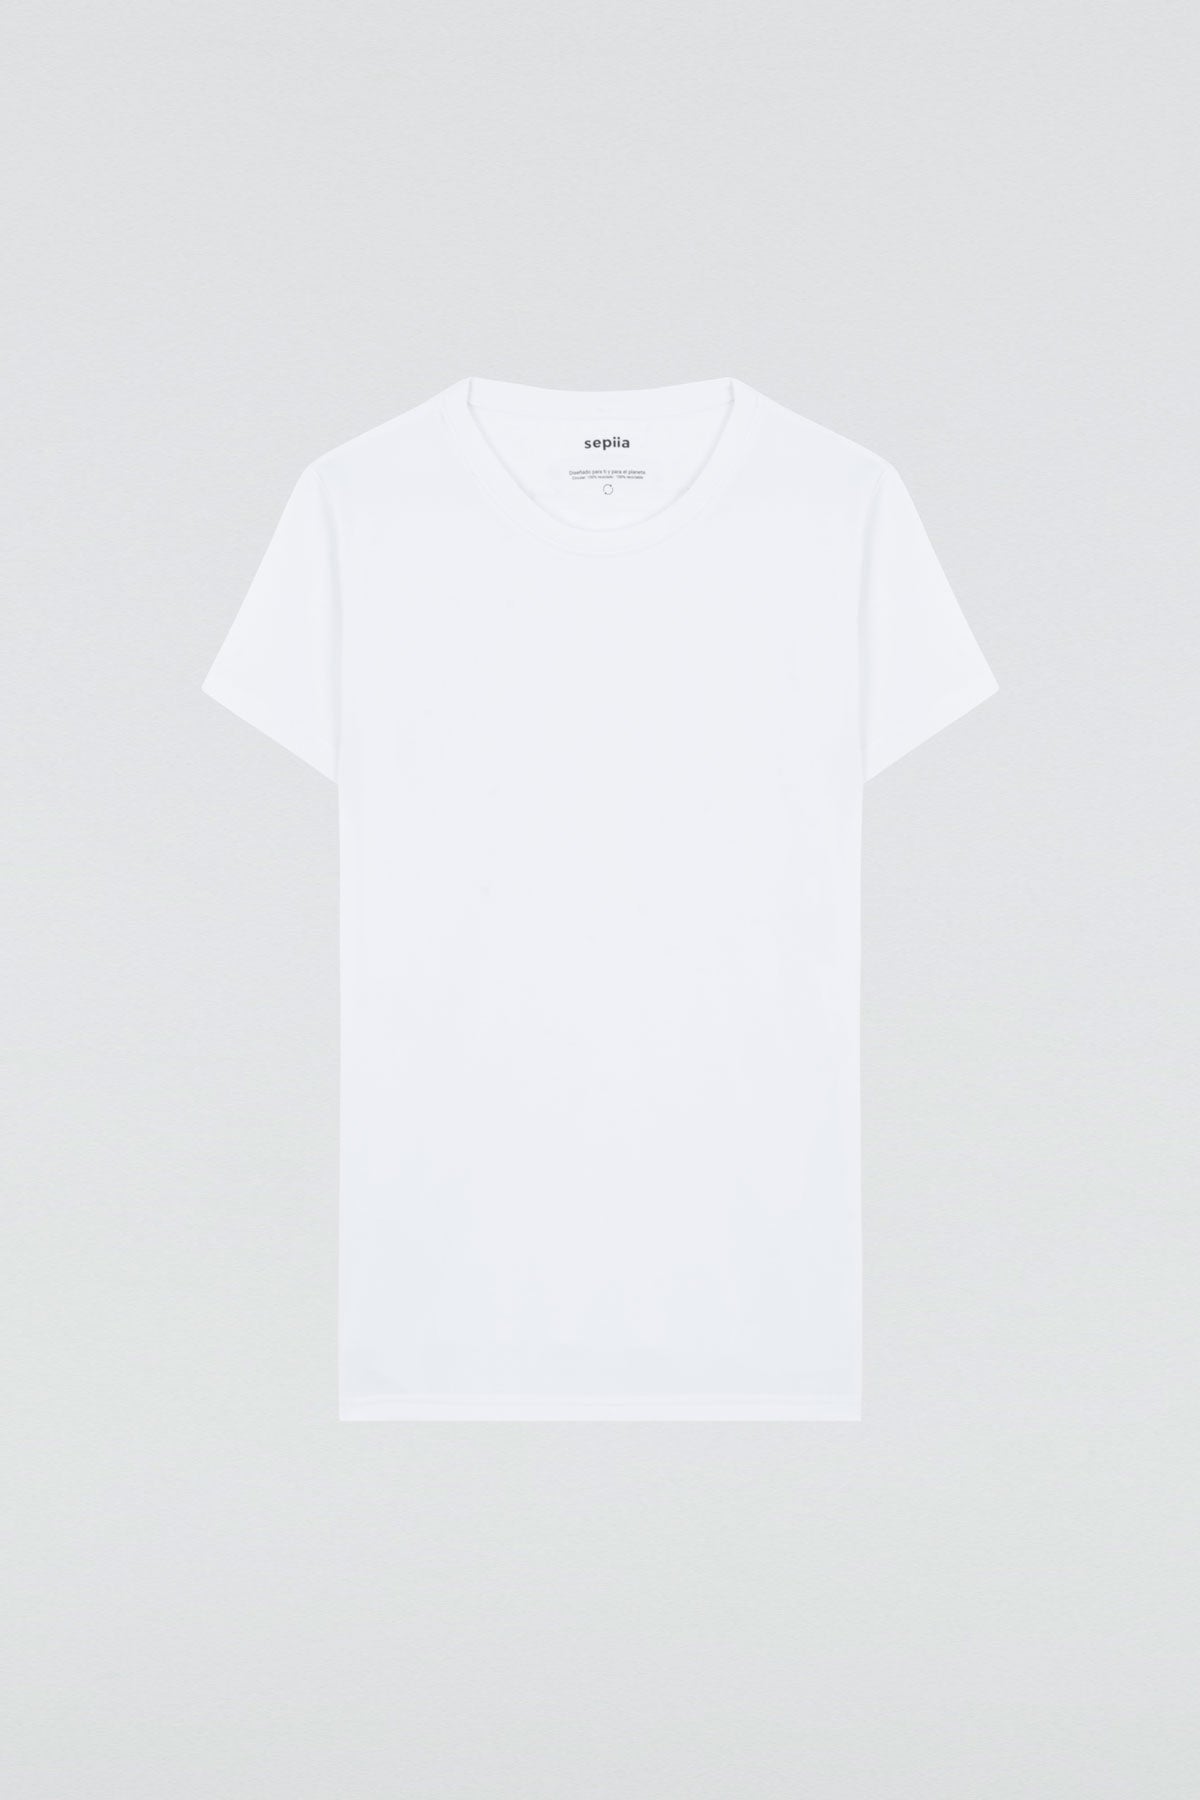 Camiseta básica de mujer blanca de manga corta, antiarrugas y antimanchas. Foto plano